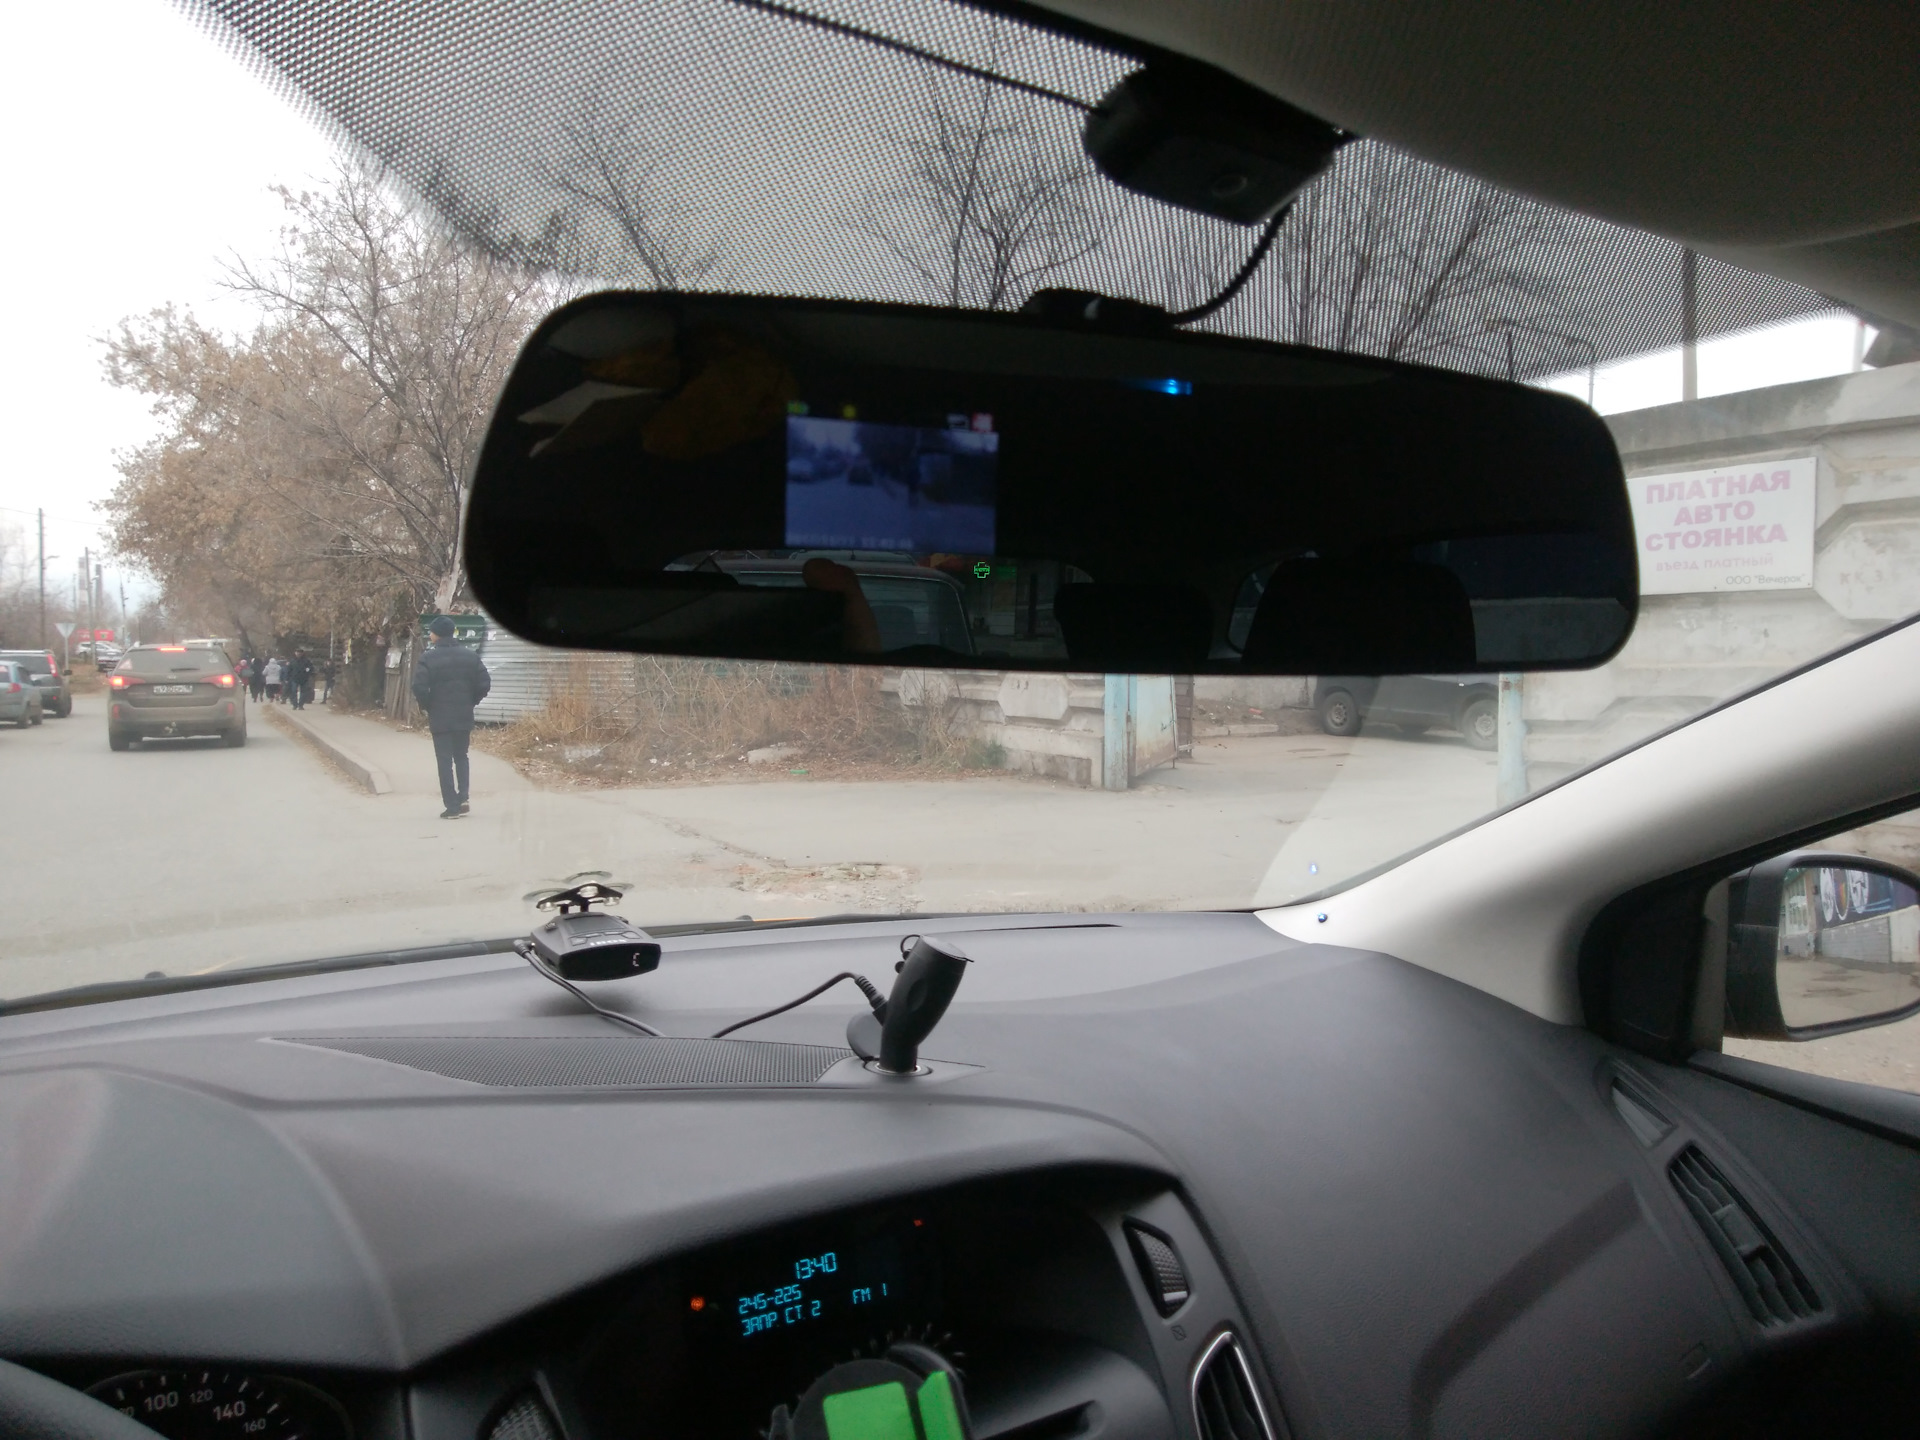 Регистратор фокус. Зеркало видеорегистратор Форд фокус-3. IBOX зеркало с регистратором и радаром. Видеорегистратор зеркало Форд фокус 3 драйв. Крепление зеркала видеорегистратора на фокус 2.